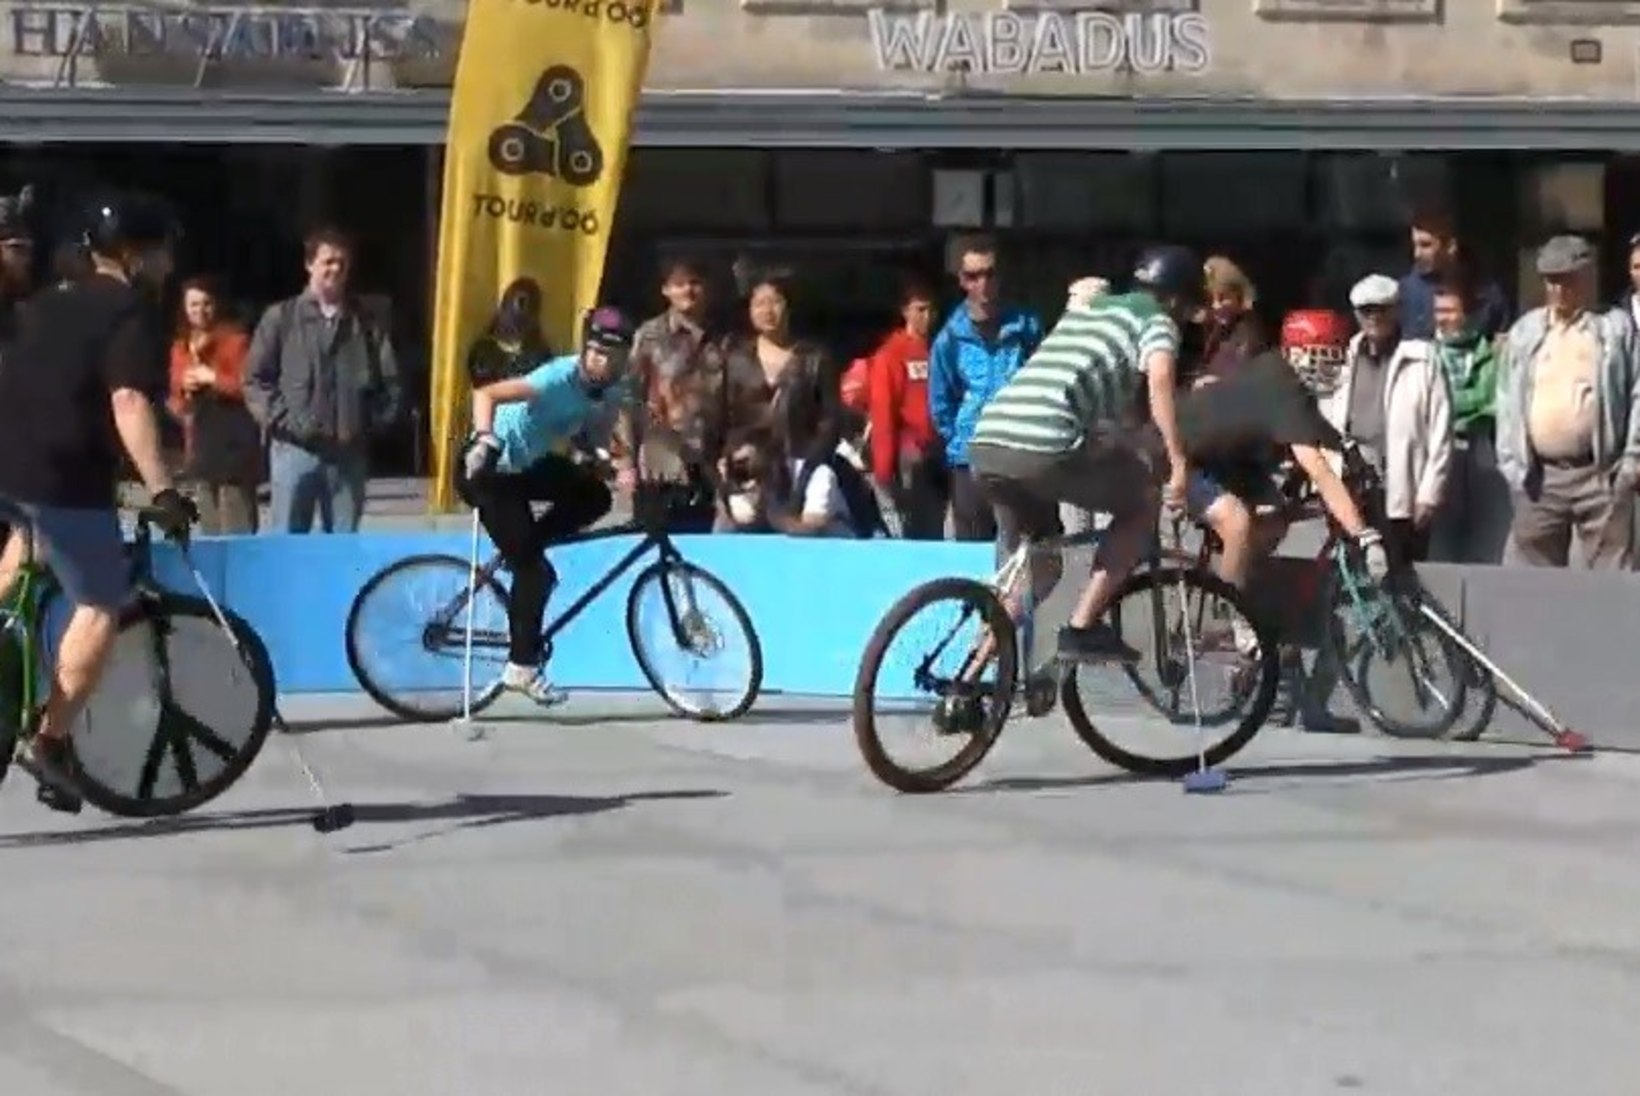 ÕHTULEHE VIDEO | Vabaduse väljaku vallutasid rattapolo mängijad